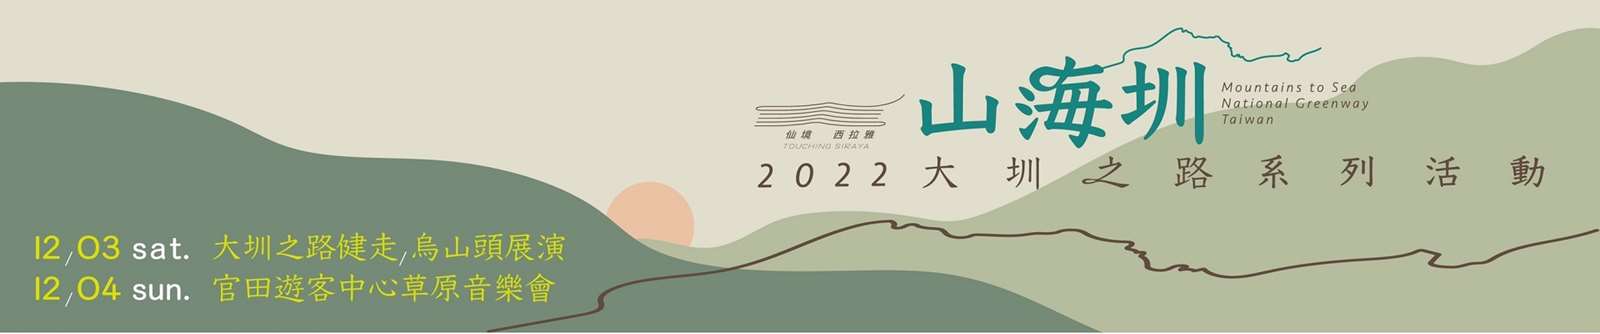 2022仙境西拉雅 山海圳 大圳之路 系列活動